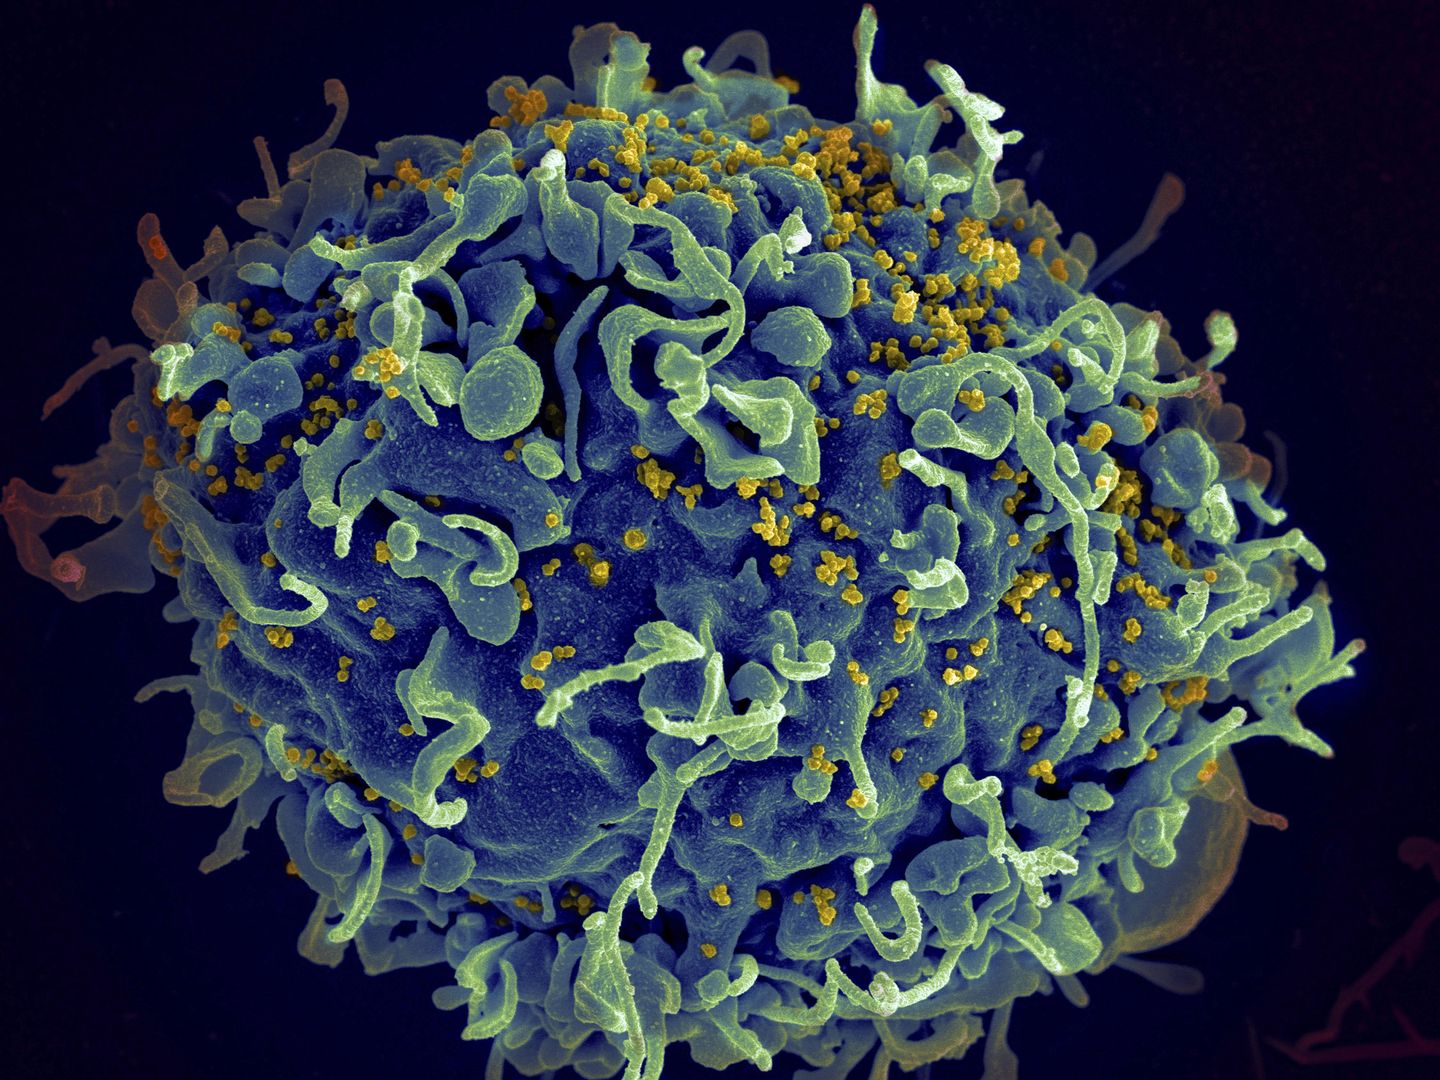 İki yeni HIV iyileşmesi vakası, bilim adamlarına geniş çapta kullanılabilir bir tedavi için umut veriyor